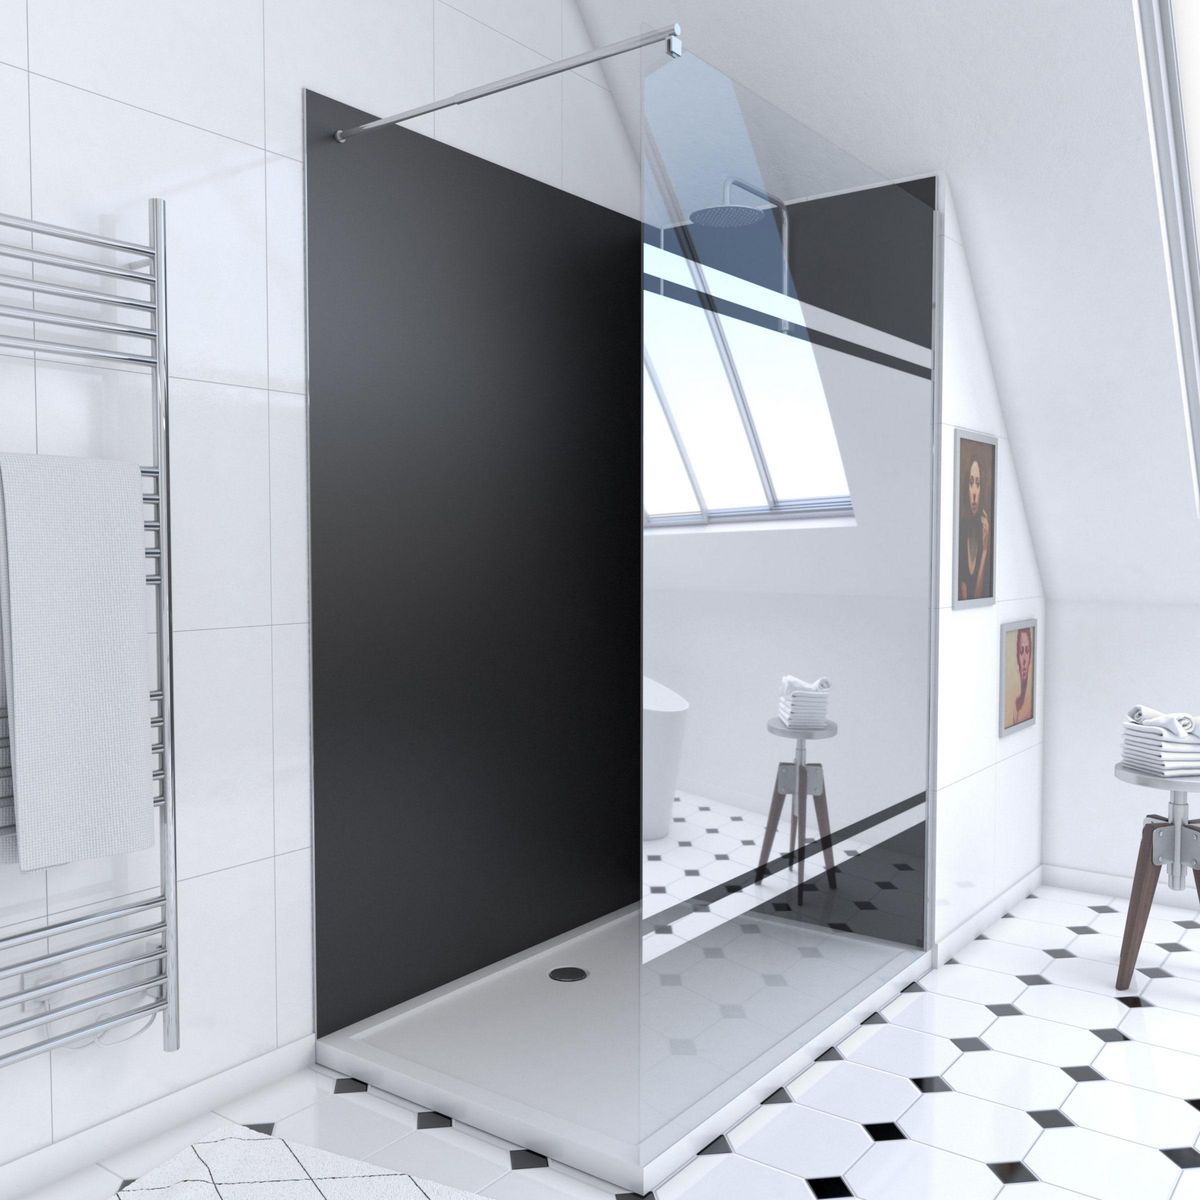 Aurlane Ensemble complet douche à l'Italiennne avec Receveur 90x120 + Paroi miroir + Panneaux muraux noir